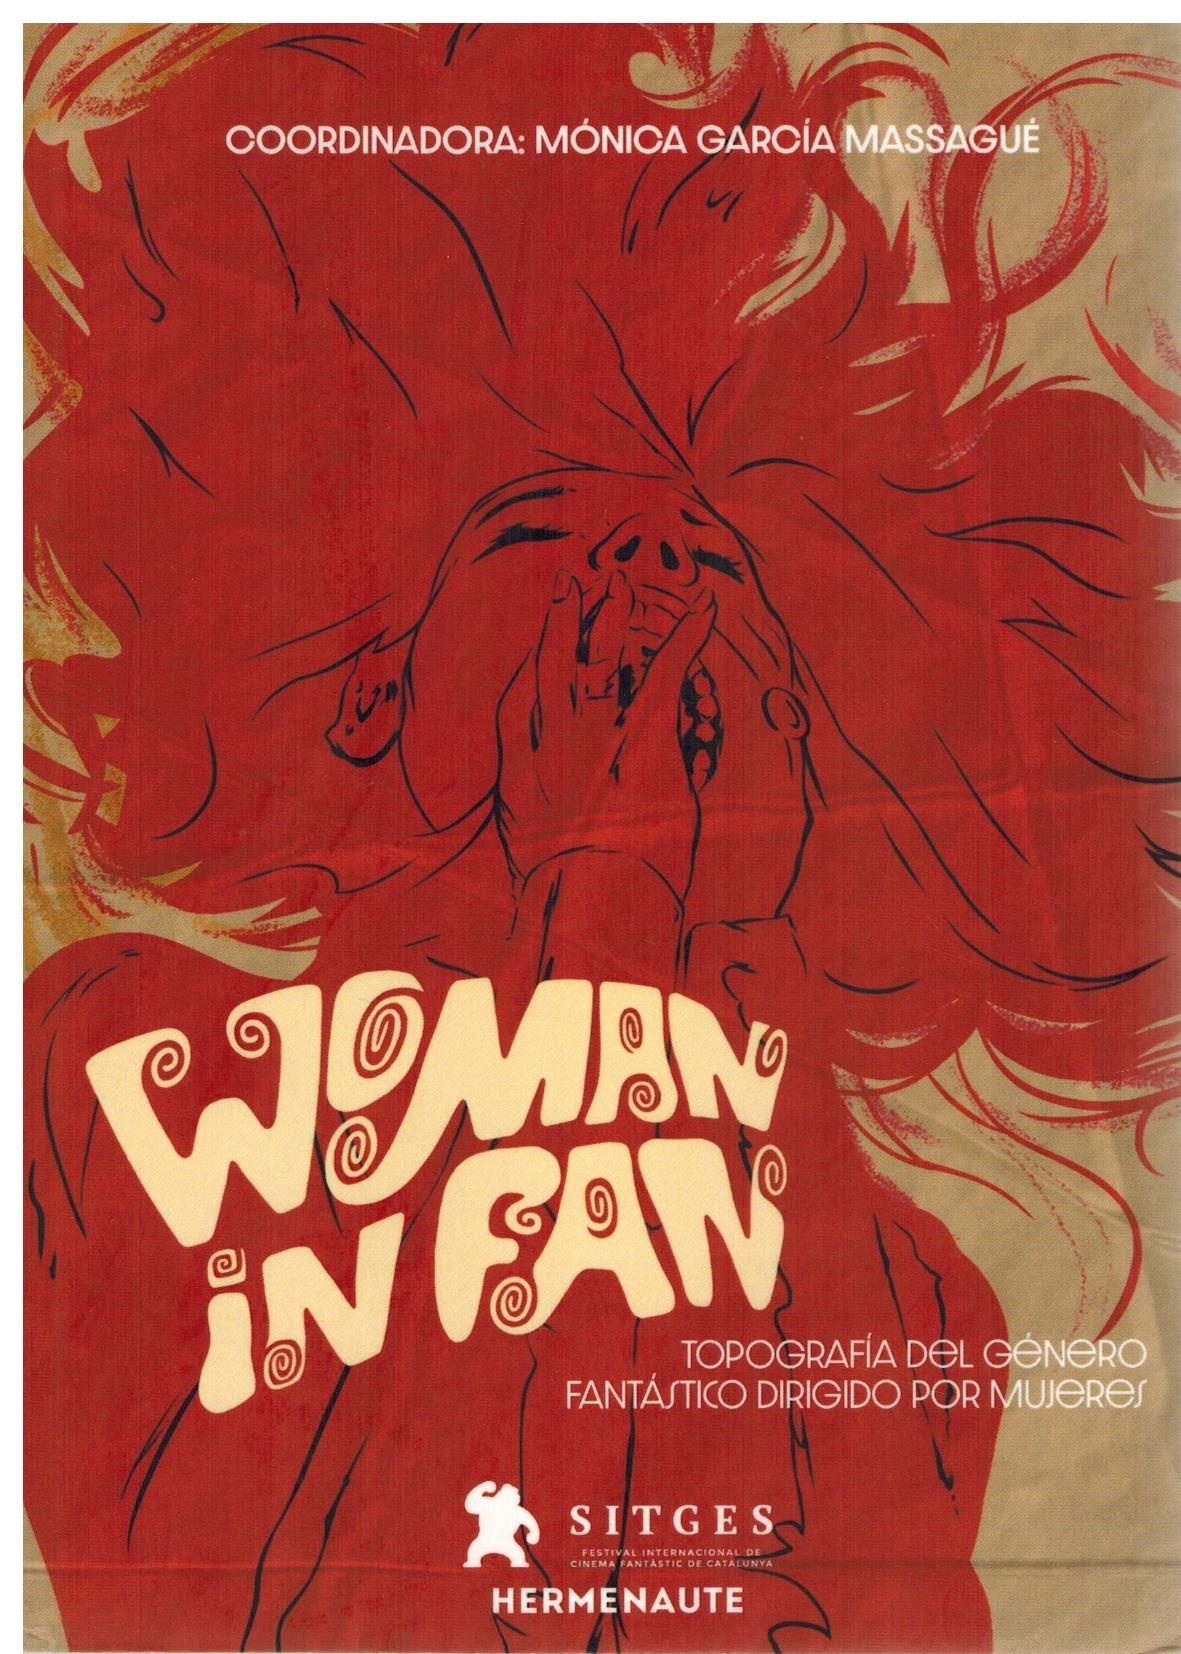 Woman in Fan. Topografía del género fantástico dirigido por mujeres